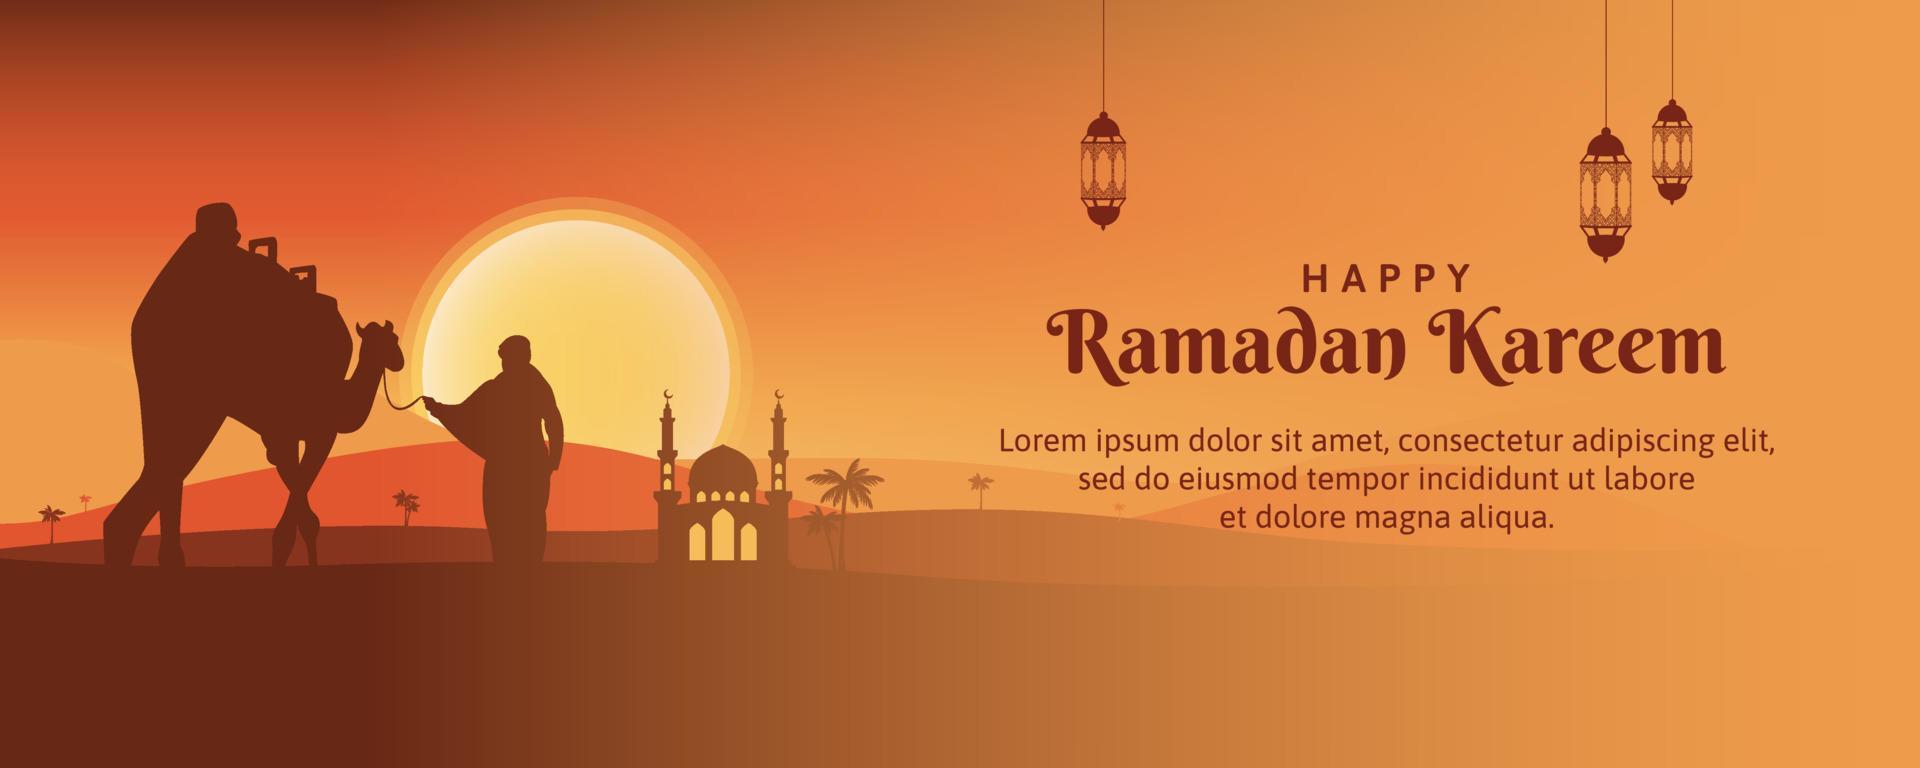 Ramadan website banier vector kunst